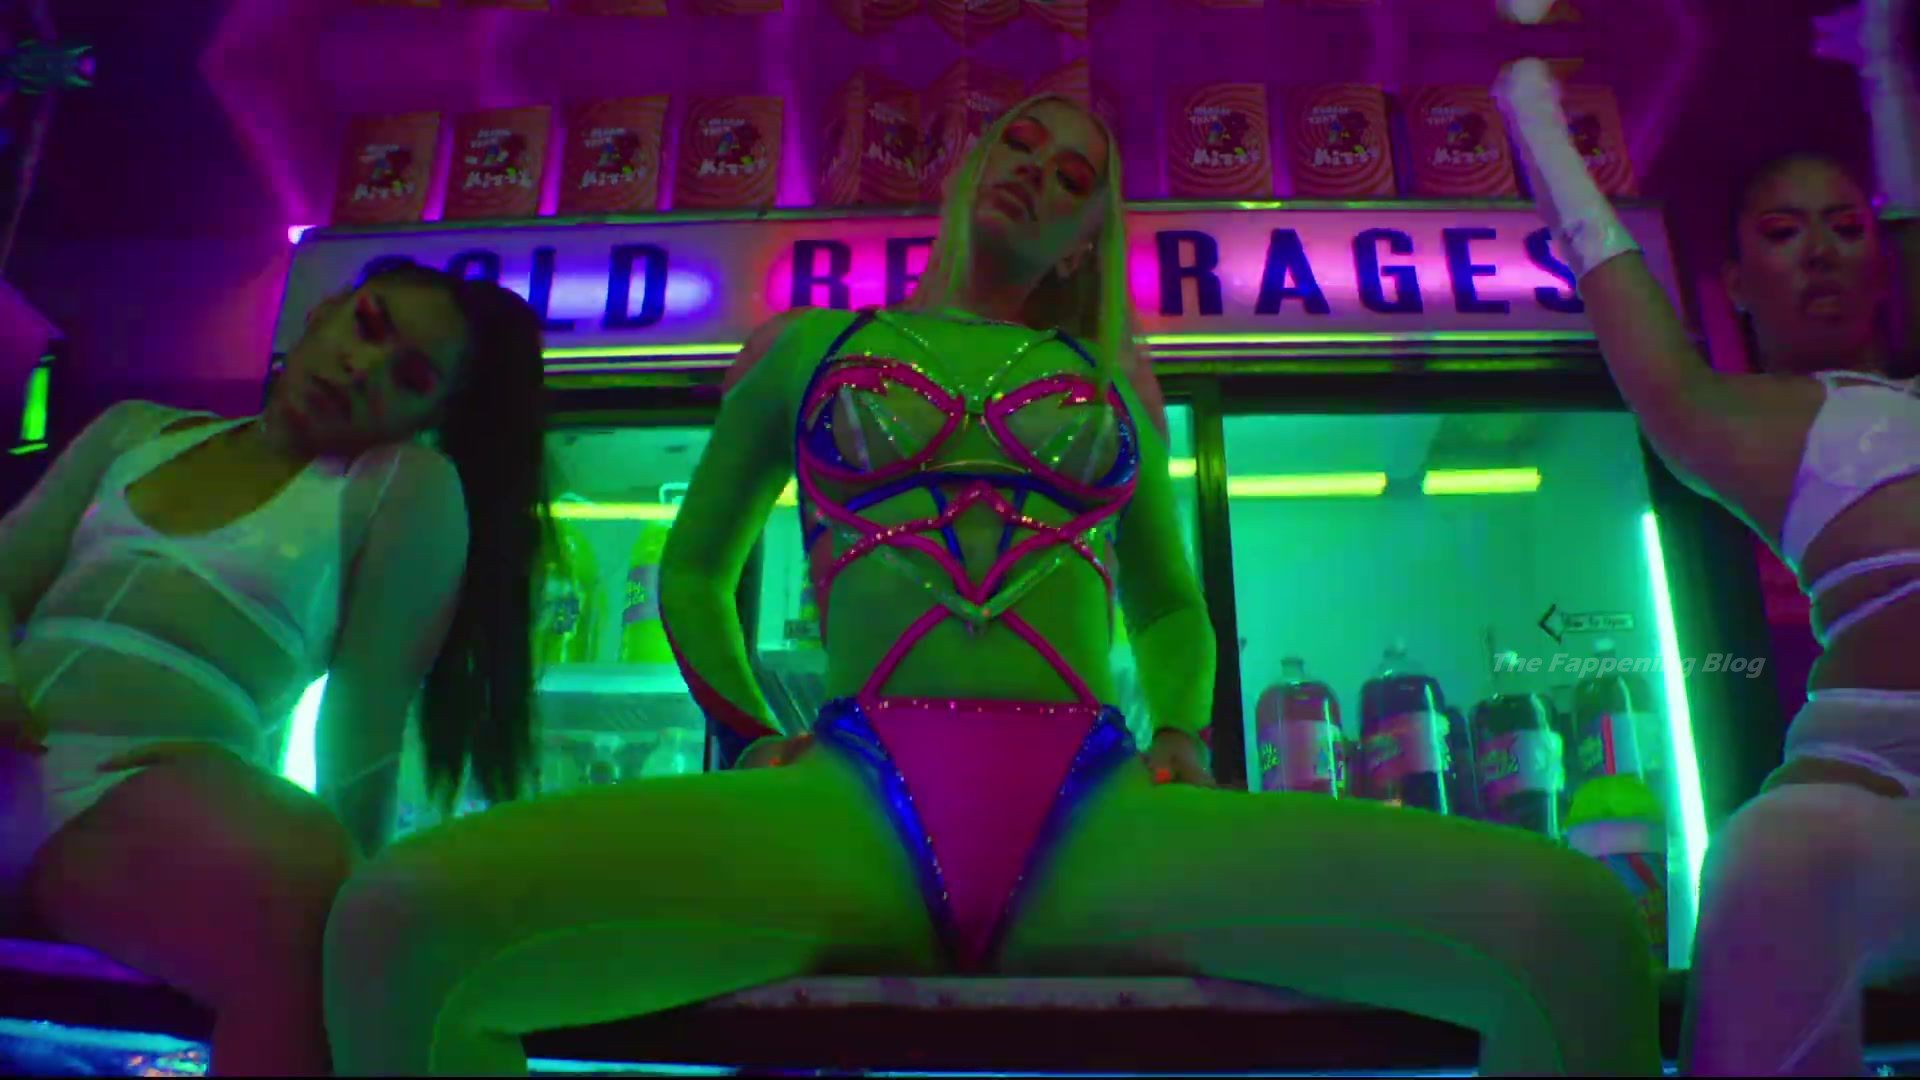 Iggy Azalea Sexy - Sip It (19 Pics + Music Video)